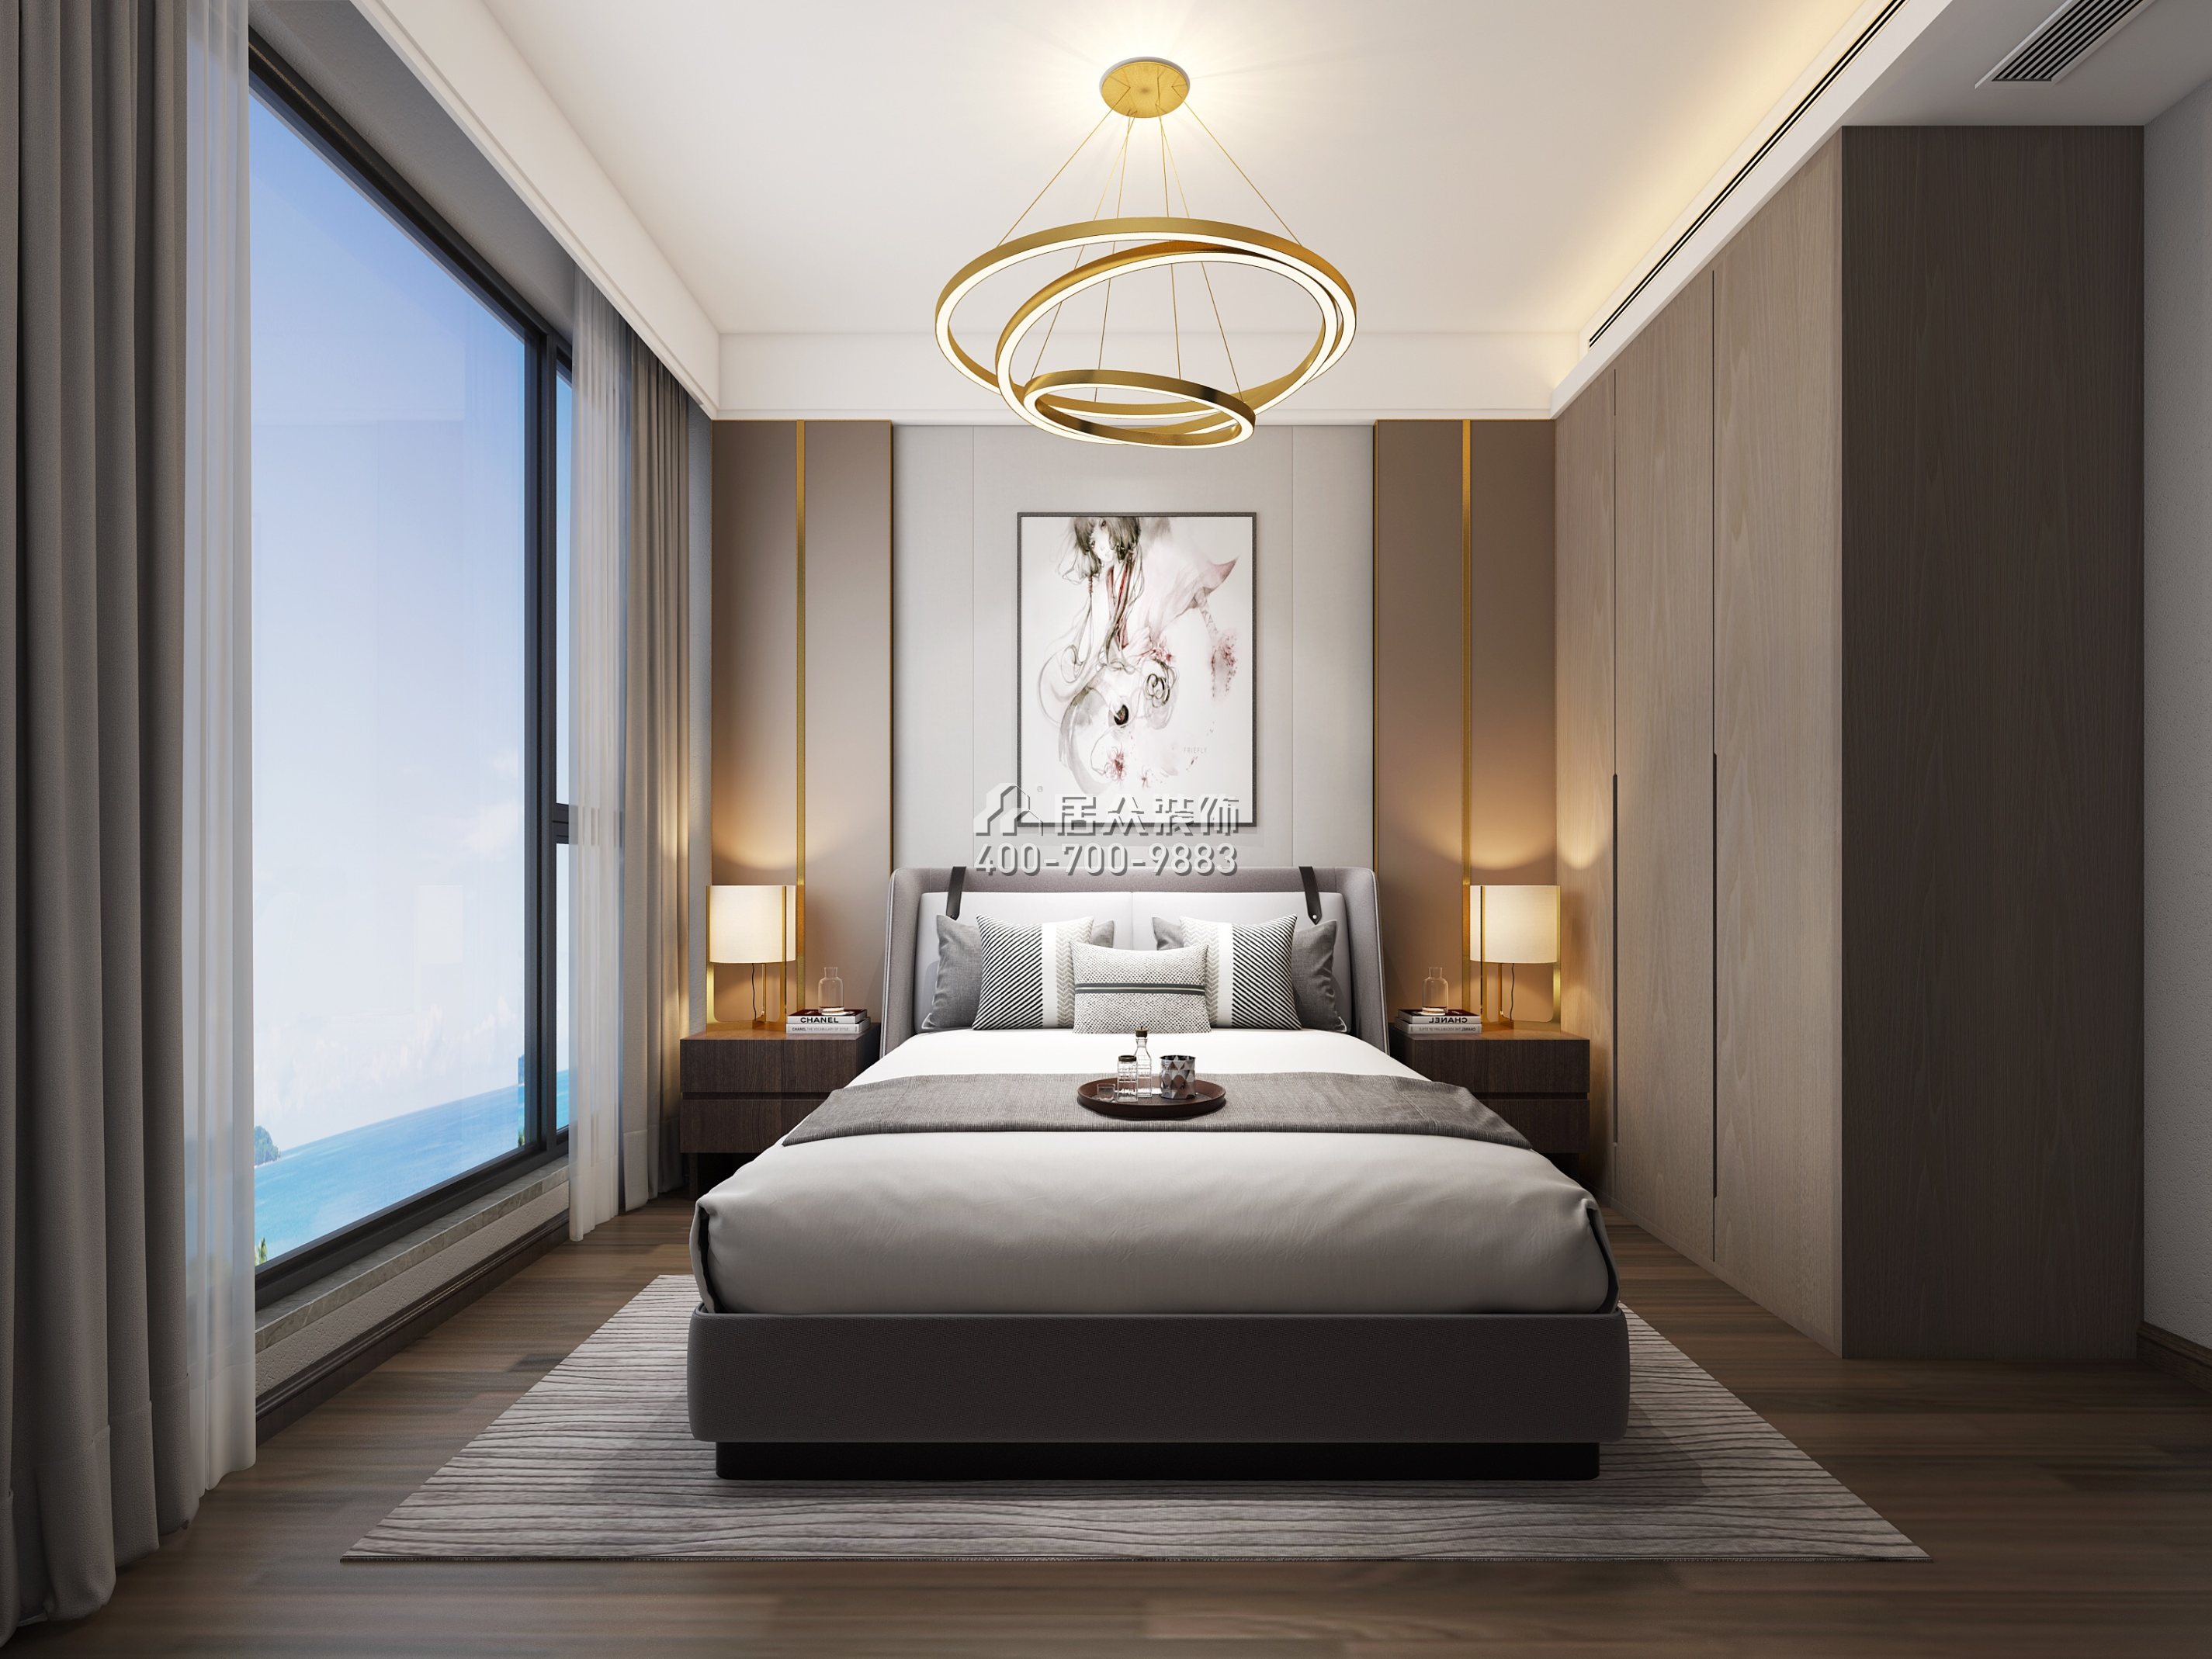 聯投東方華府二期150平方米現代簡約風格平層戶型臥室裝修效果圖